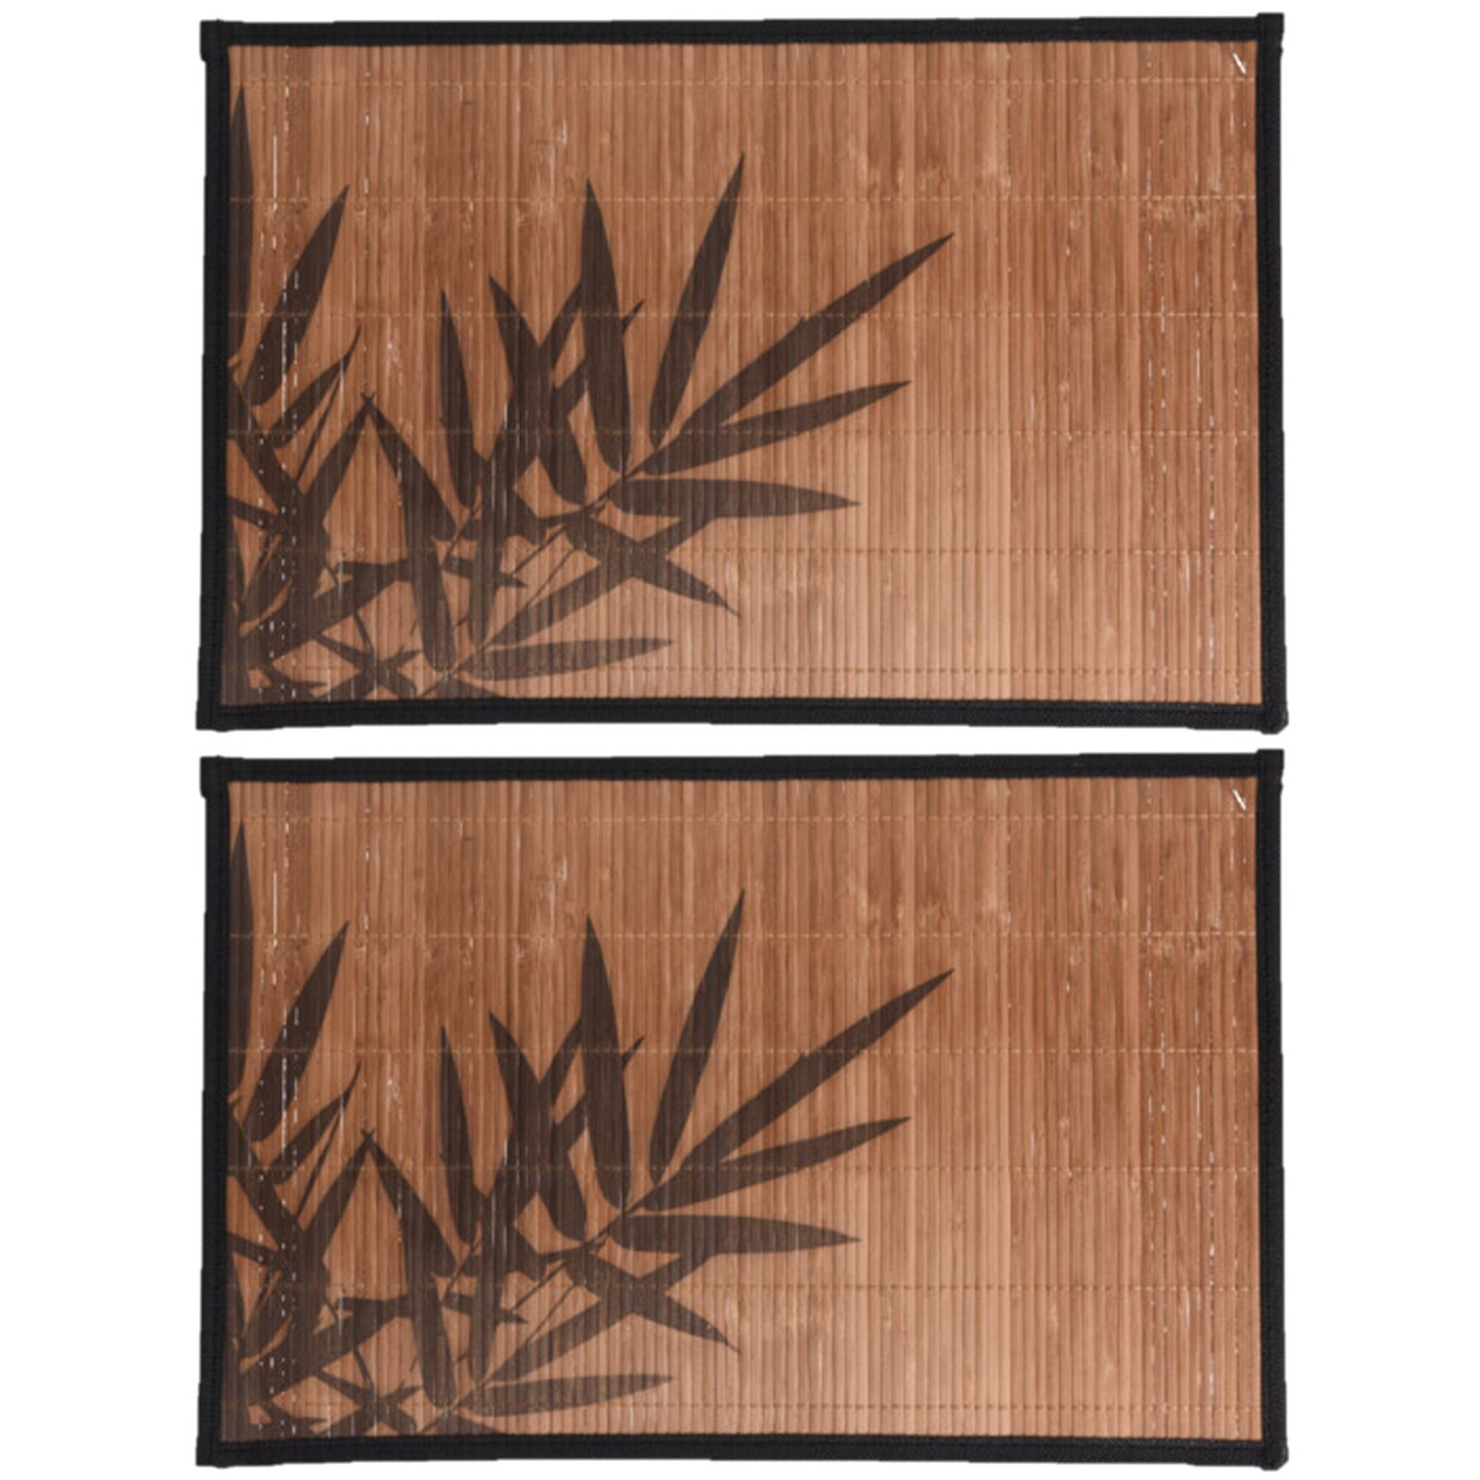 4x stuks rechthoekige placemat 30 x 45 cm bamboe bruin met zwarte bamboe print 2